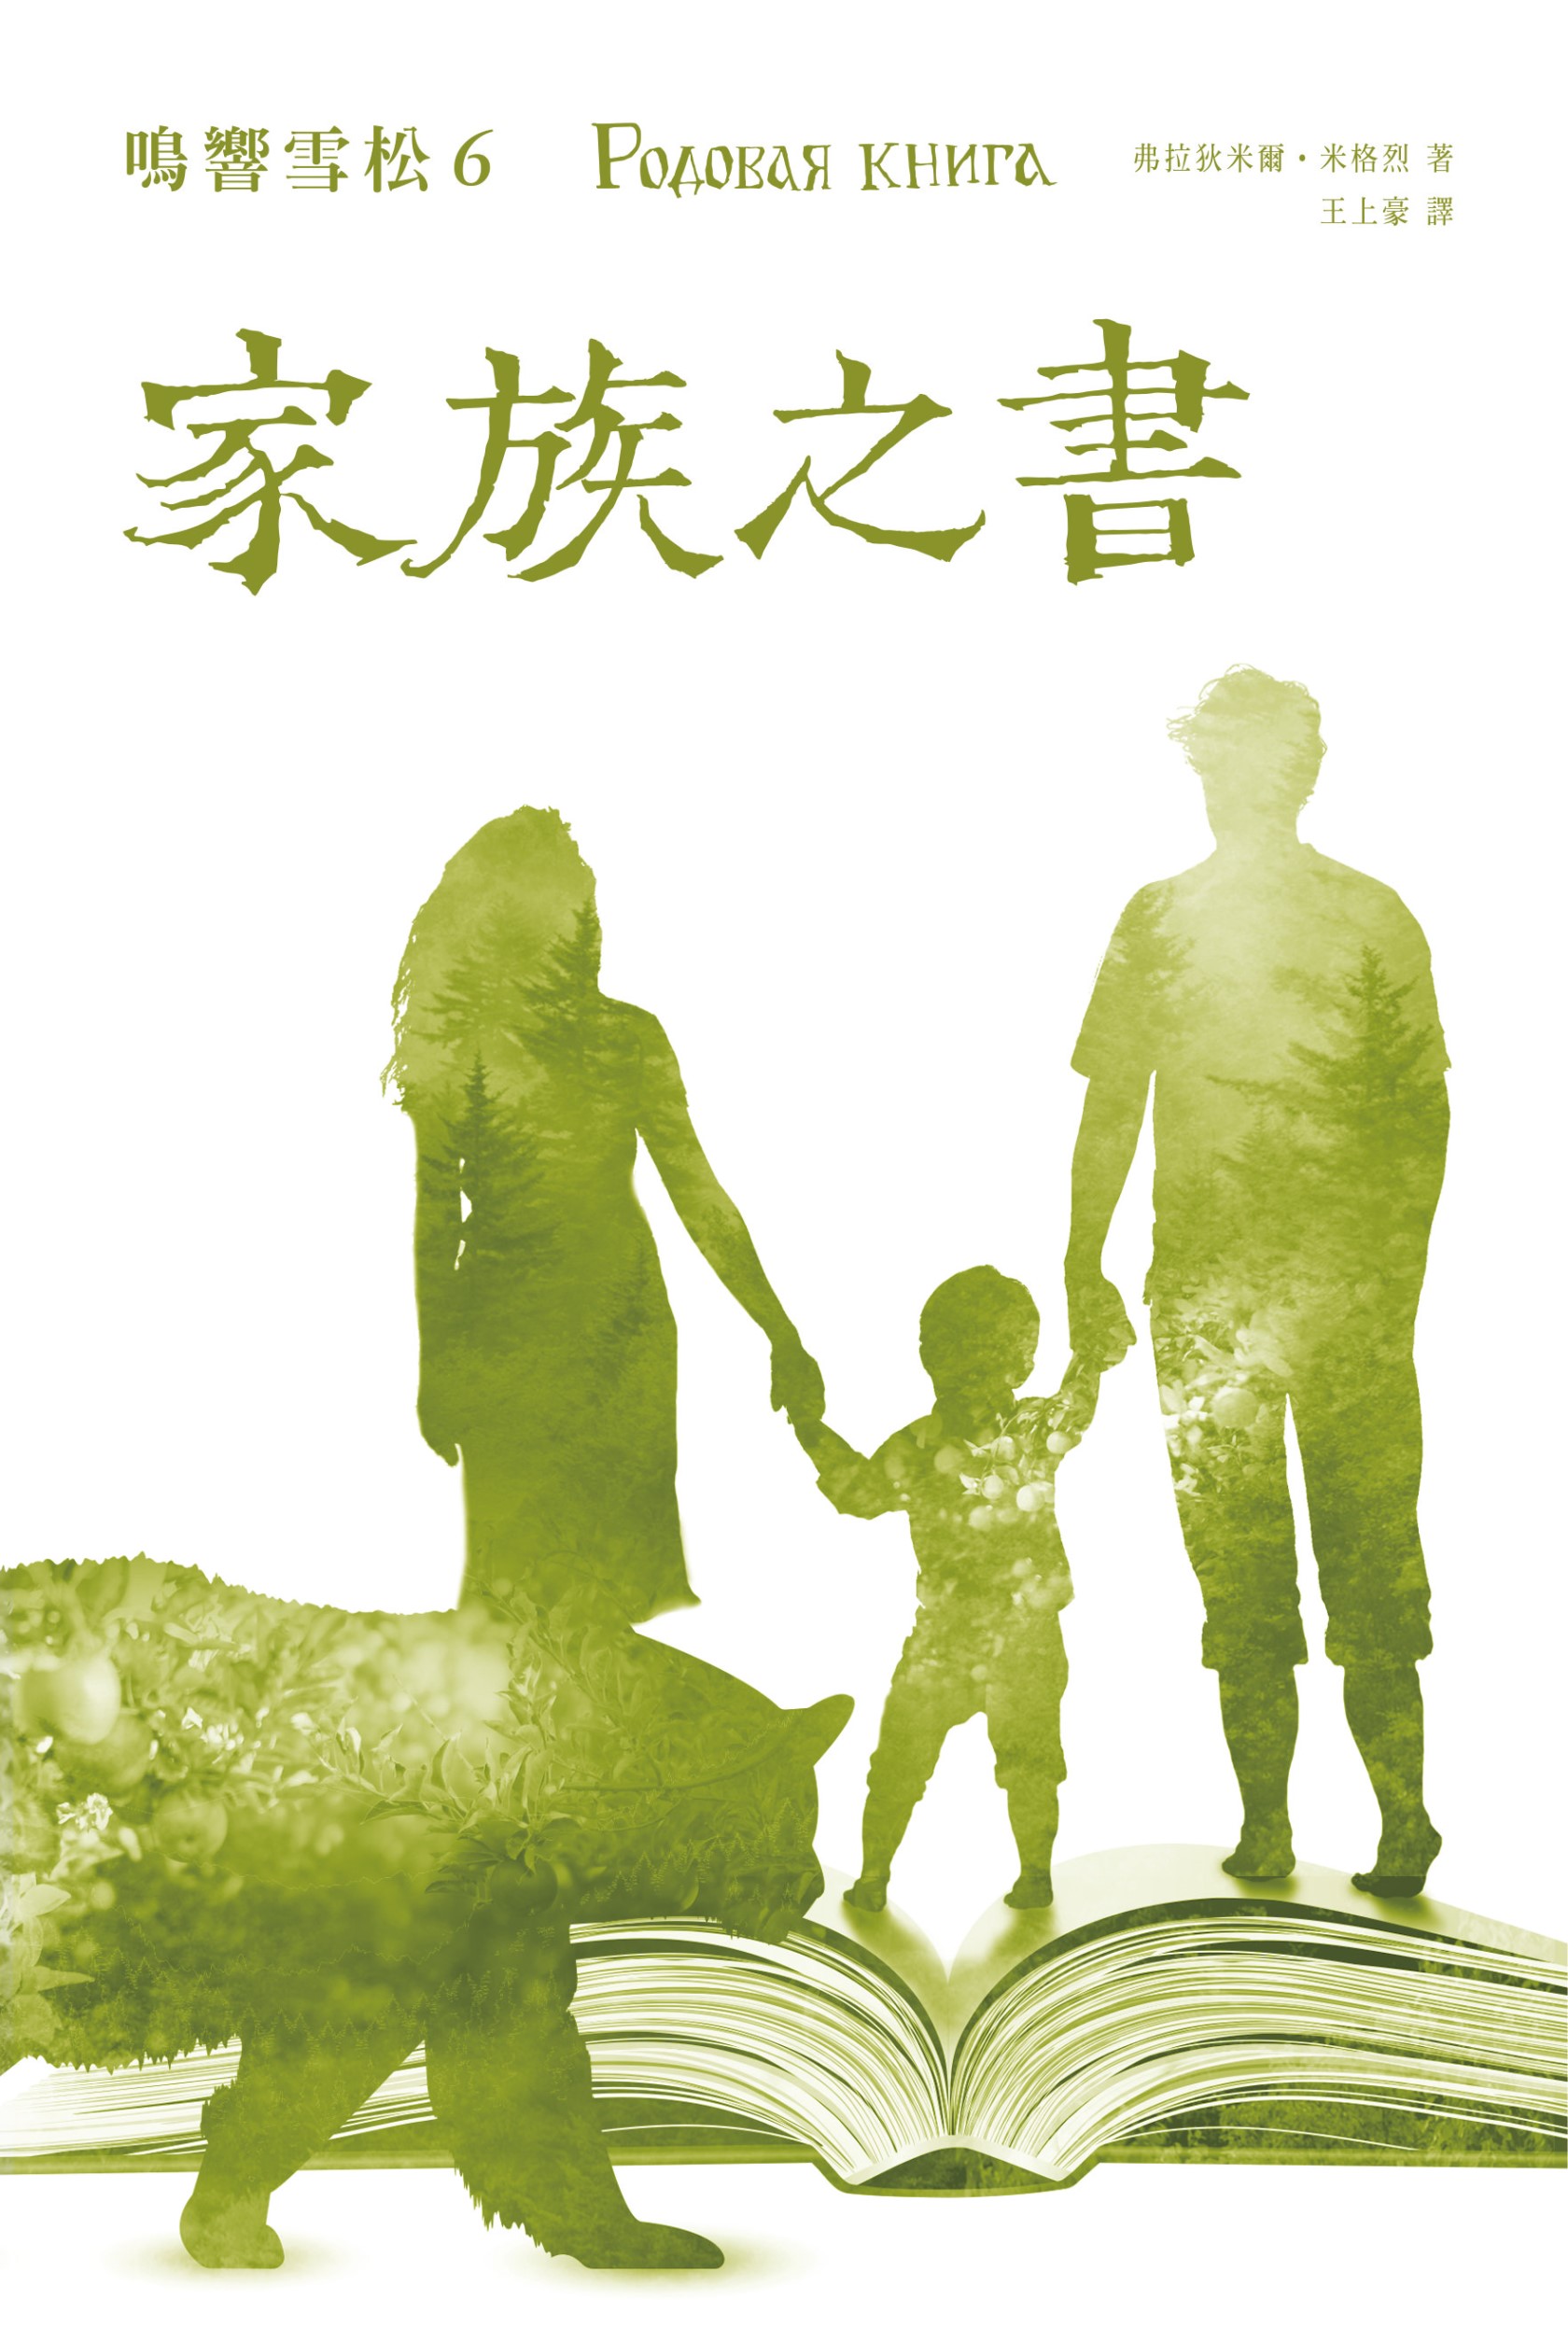 Вышла 6 книга В.Мегре Родовая книга на китайском традиционном языке!.jpg